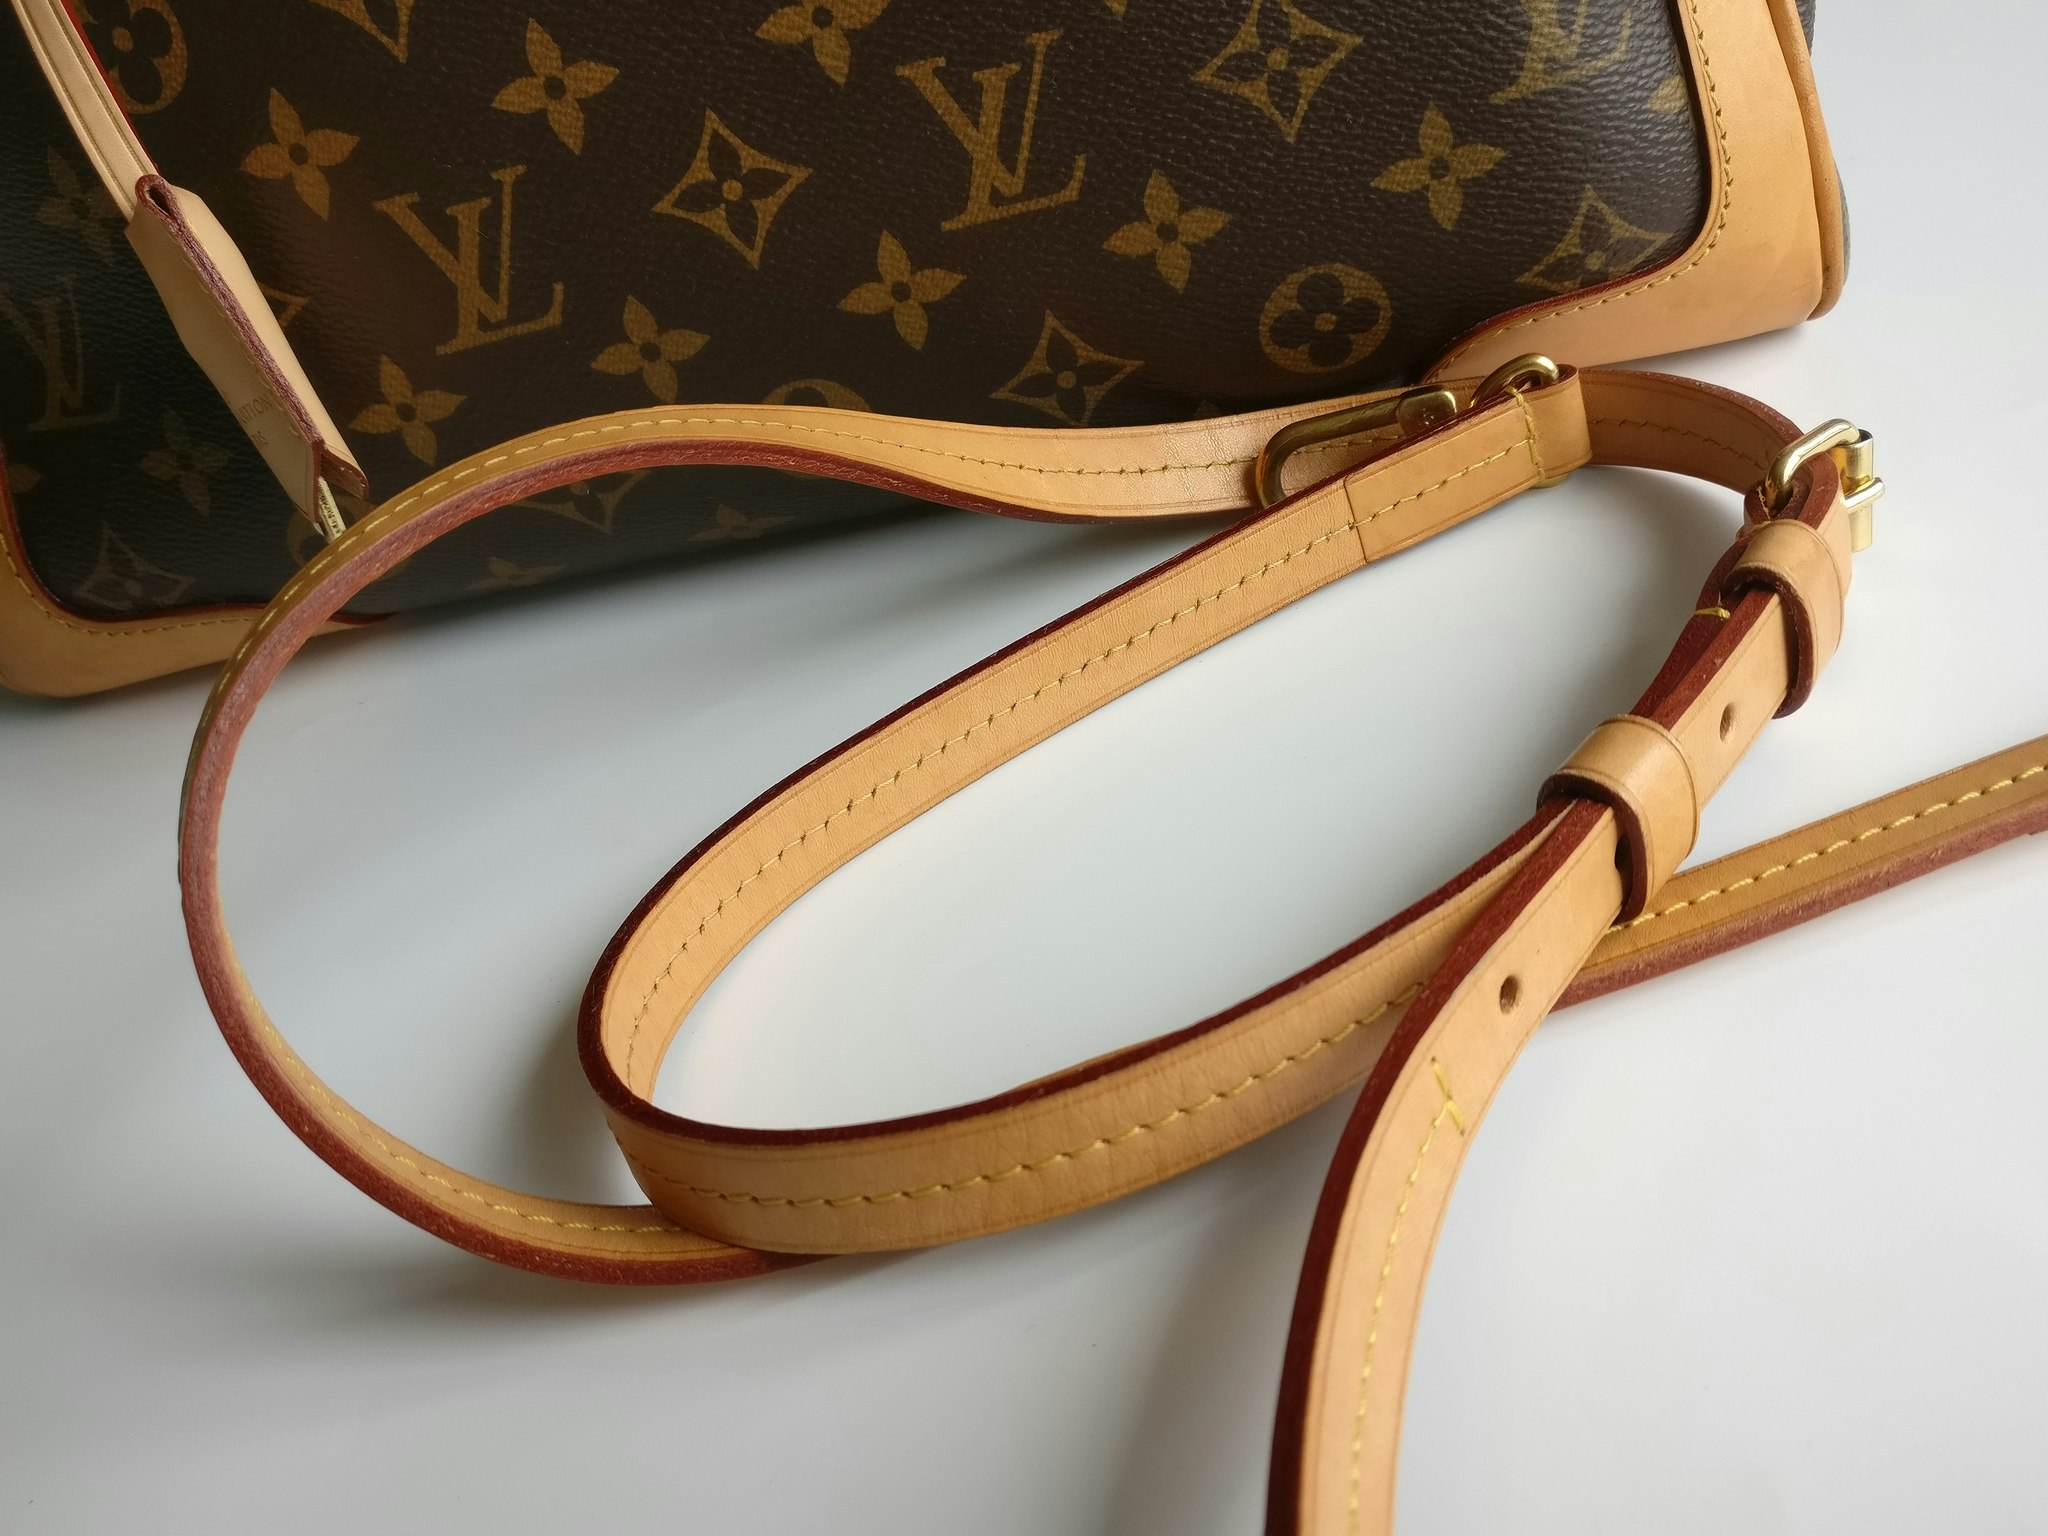 Louis Vuitton Retiro 2 Way - Good or Bag